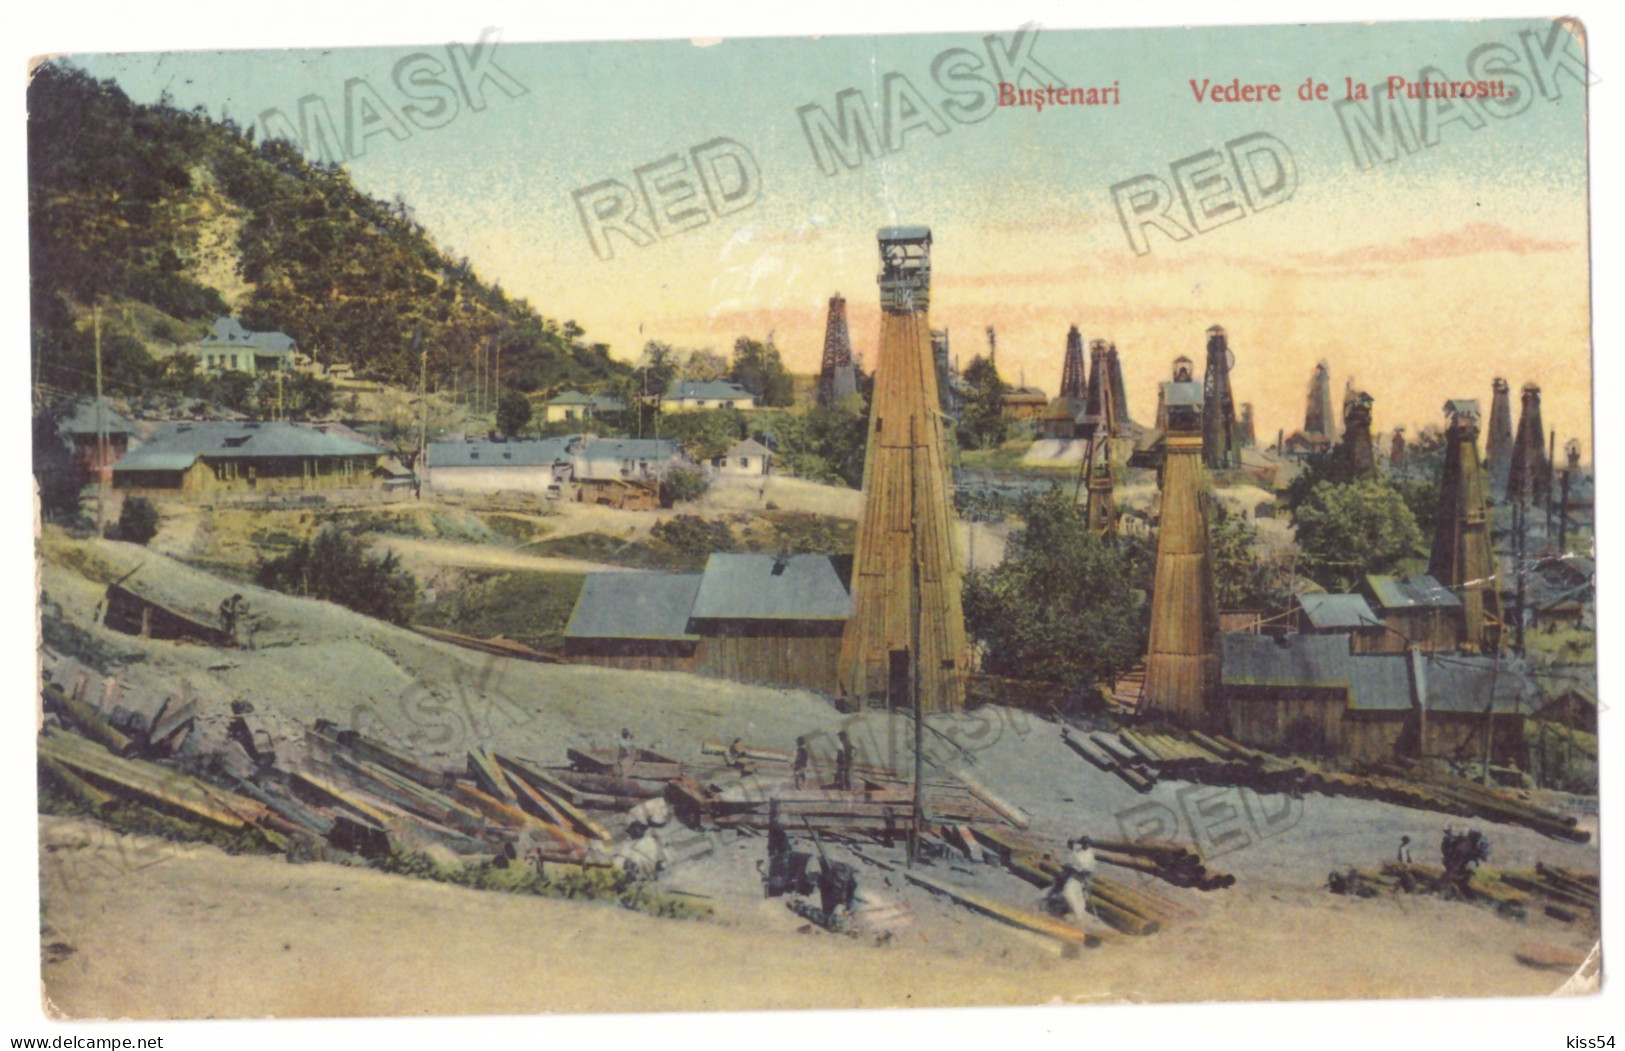 RO 63 - 24209 BUSTENARI, Prahova, Oil Wells, Romania - Old Postcard, CENSOR - Used - 1917 - Rumänien